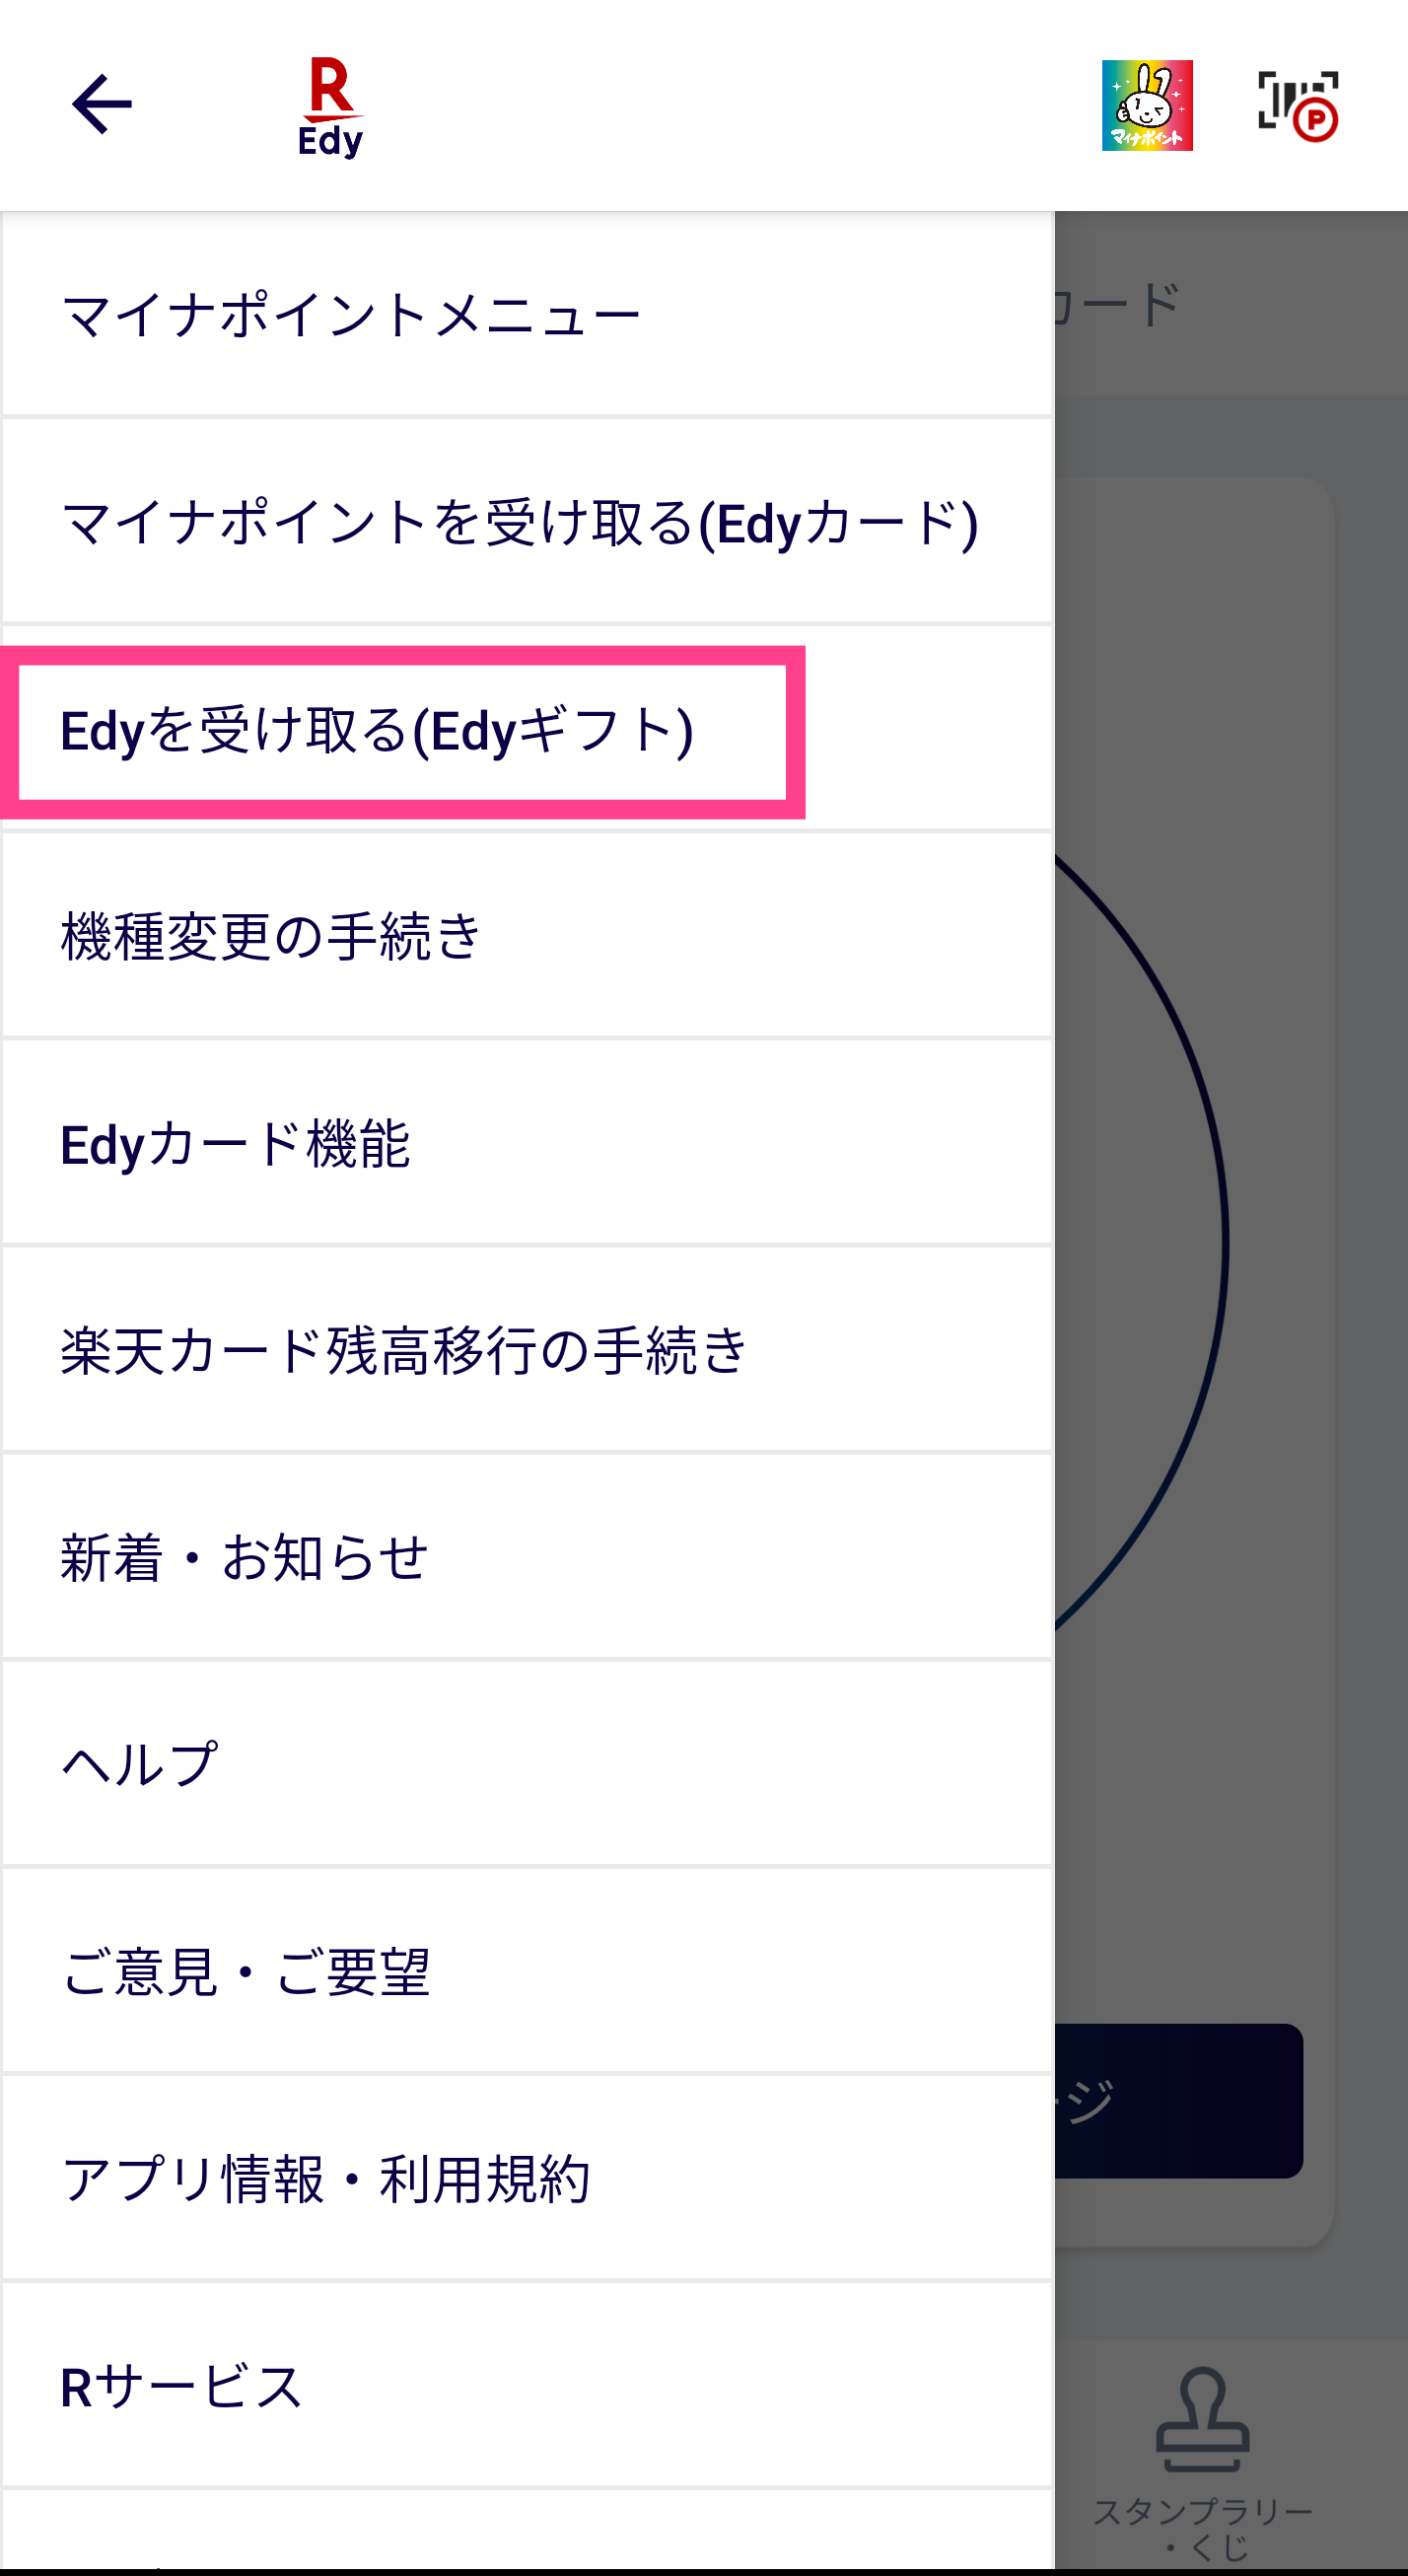 Edy-アプリ側の受け取り操作